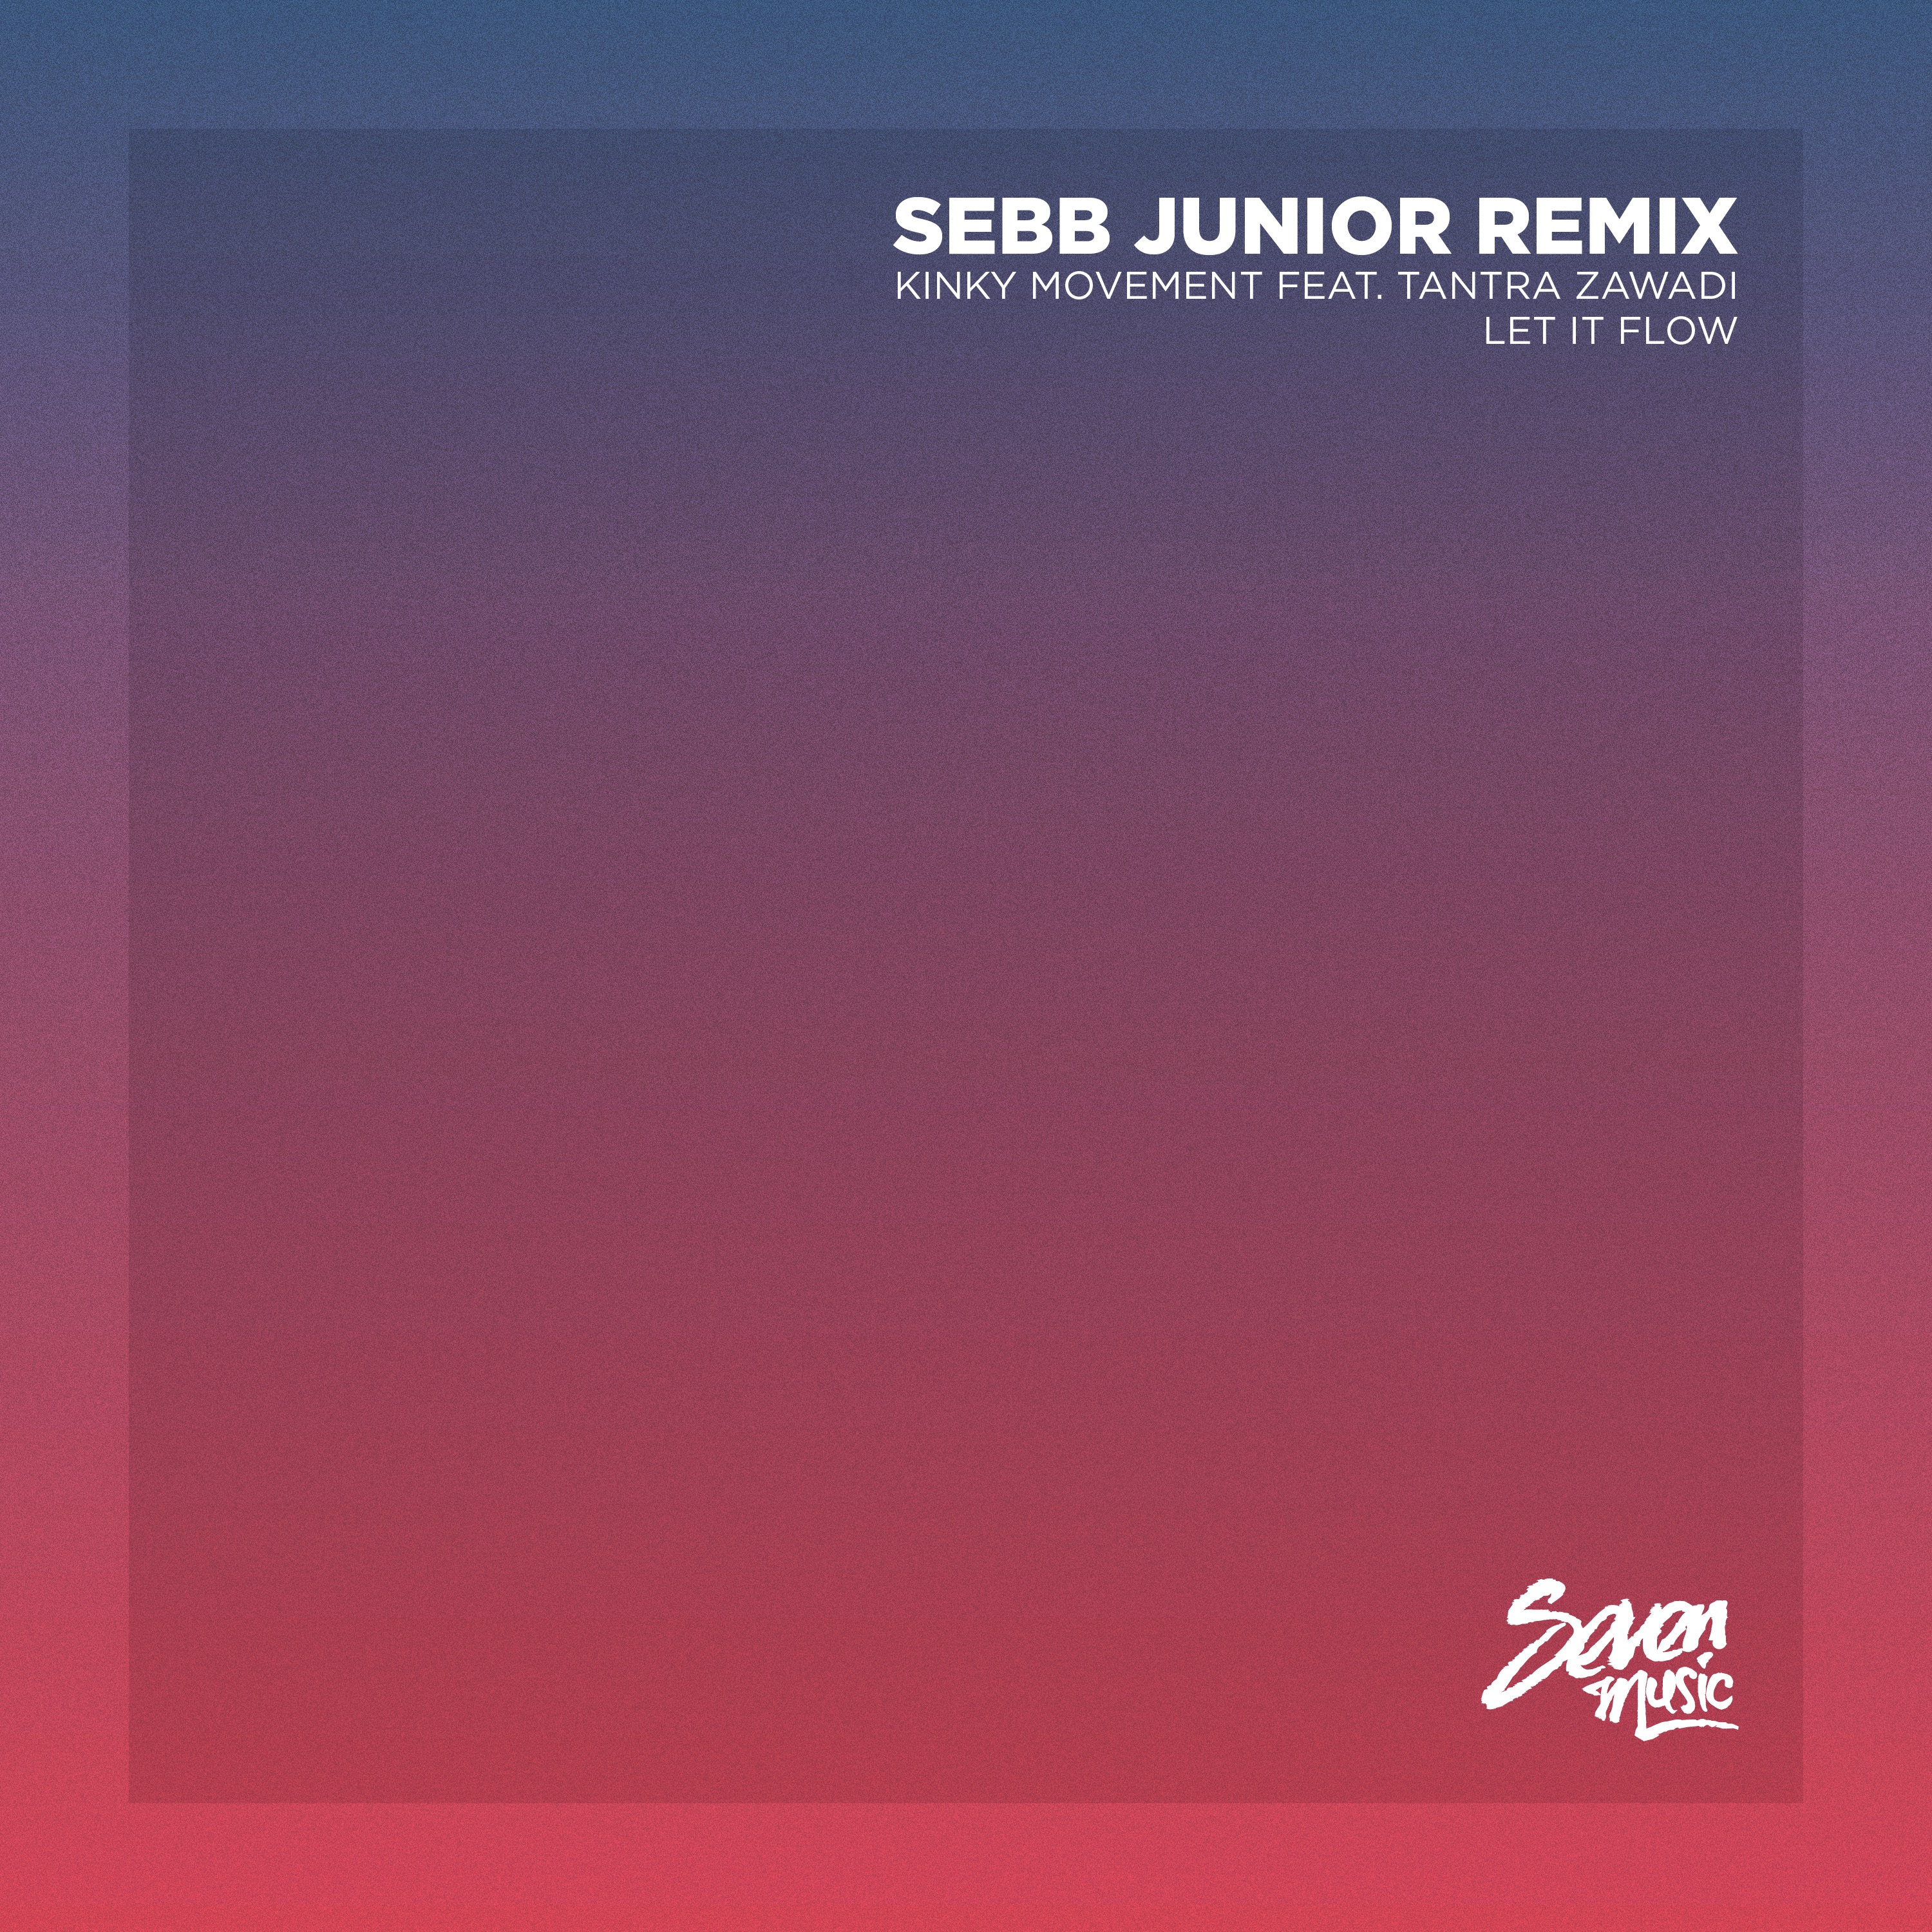 הורד Premiere: Kinky Movement - Let It Flow (Sebb Junior Remix) - Seven Music